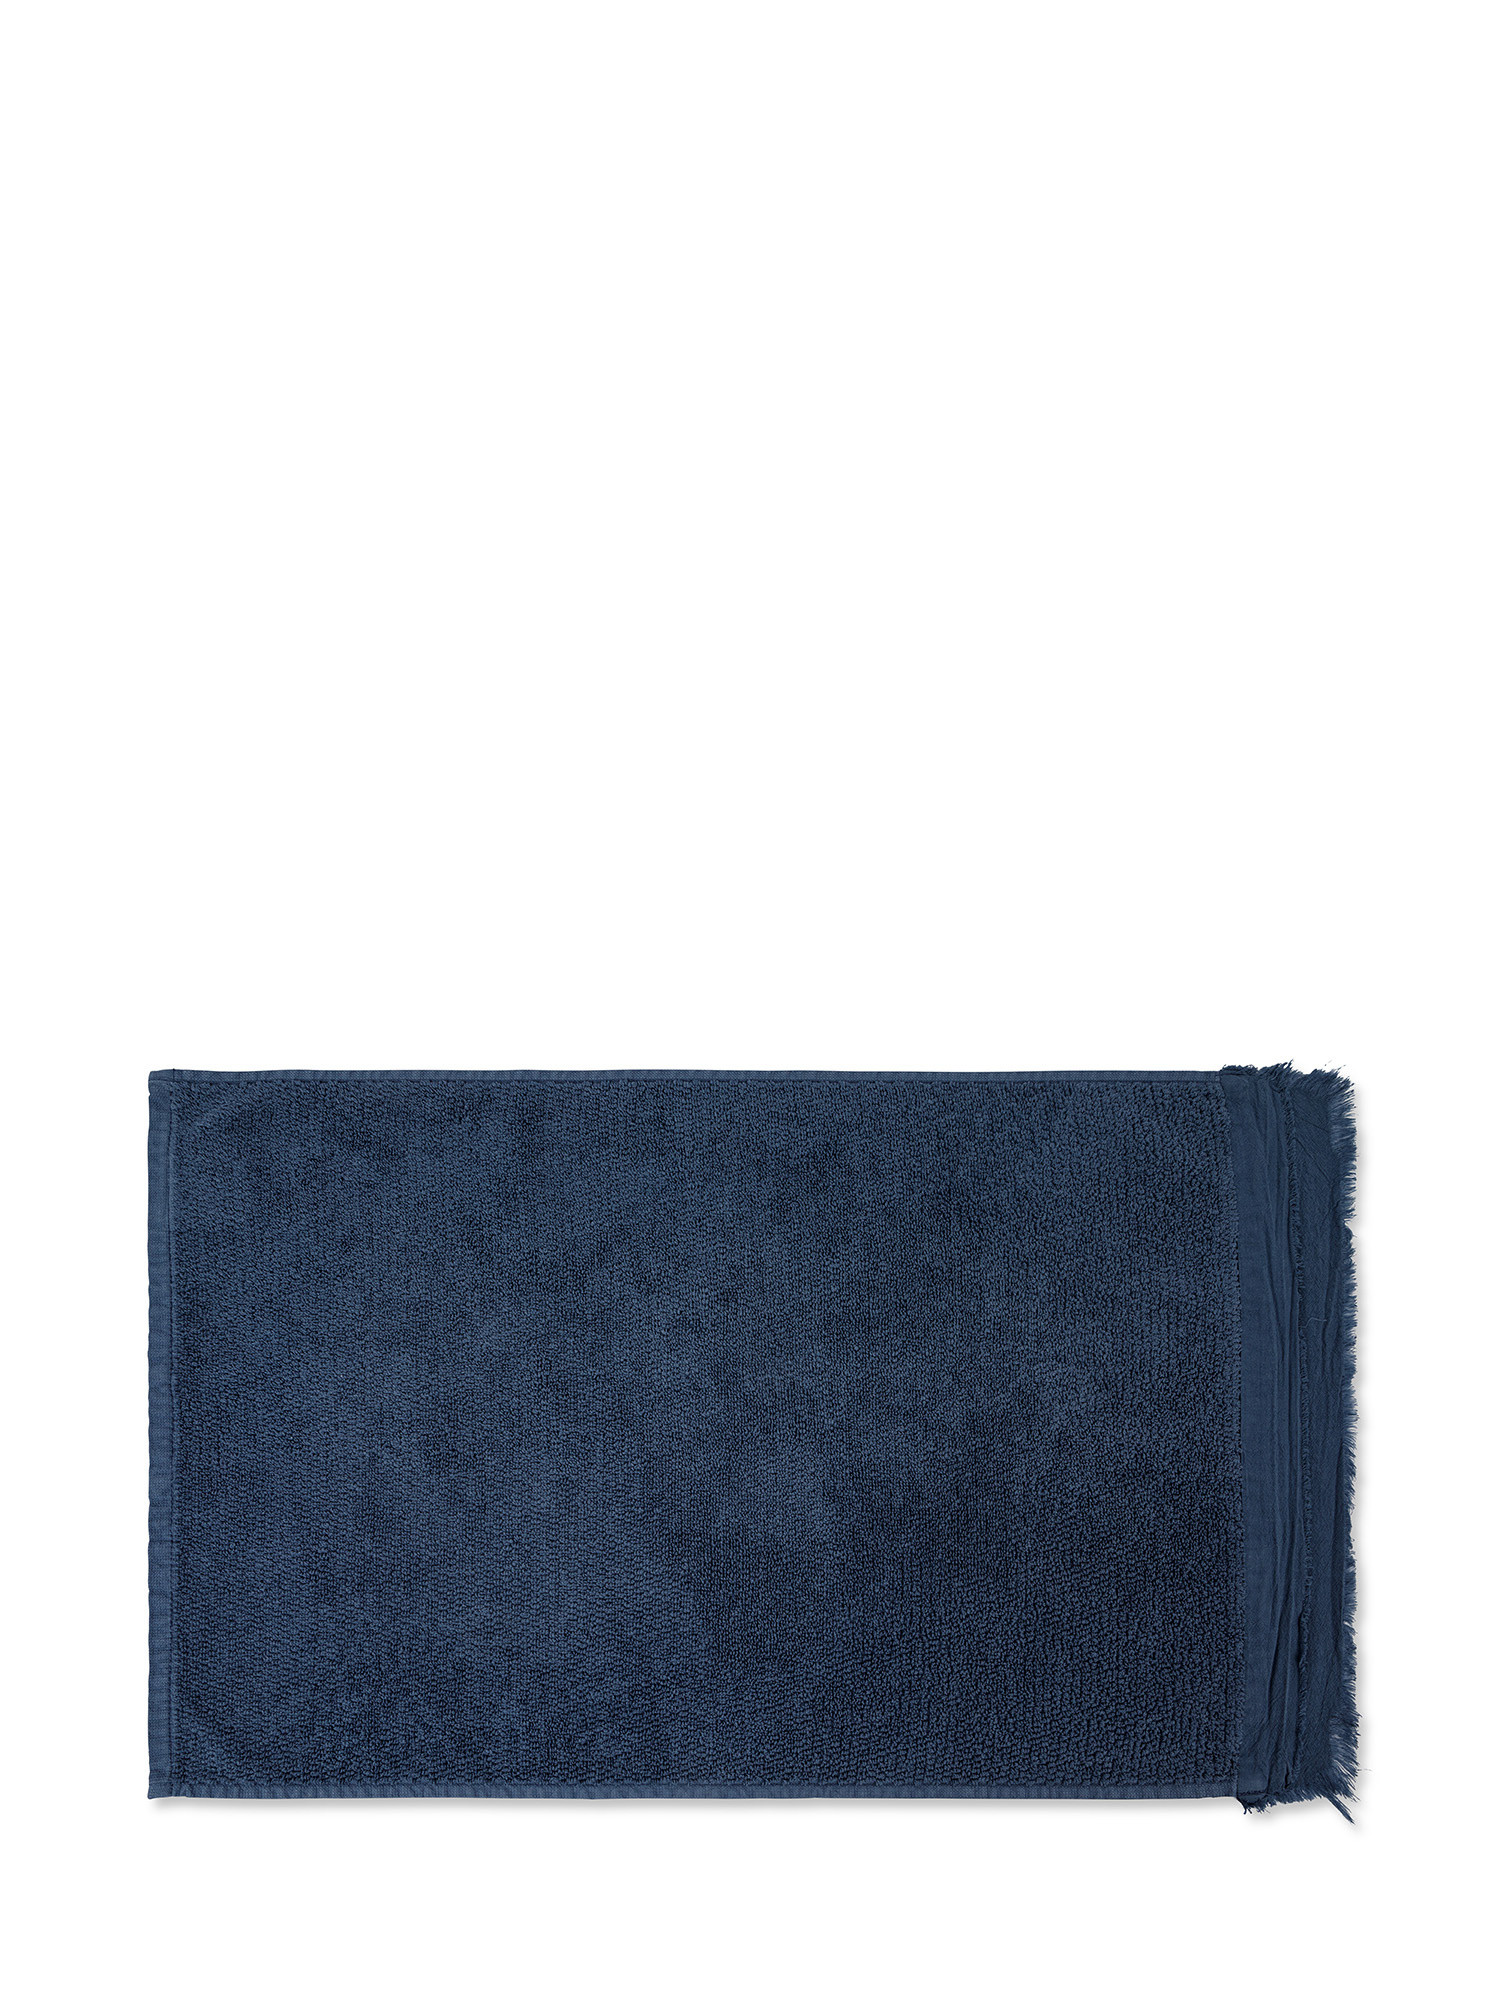 Asciugamano spugna di cotone con volant, Blu, large image number 2